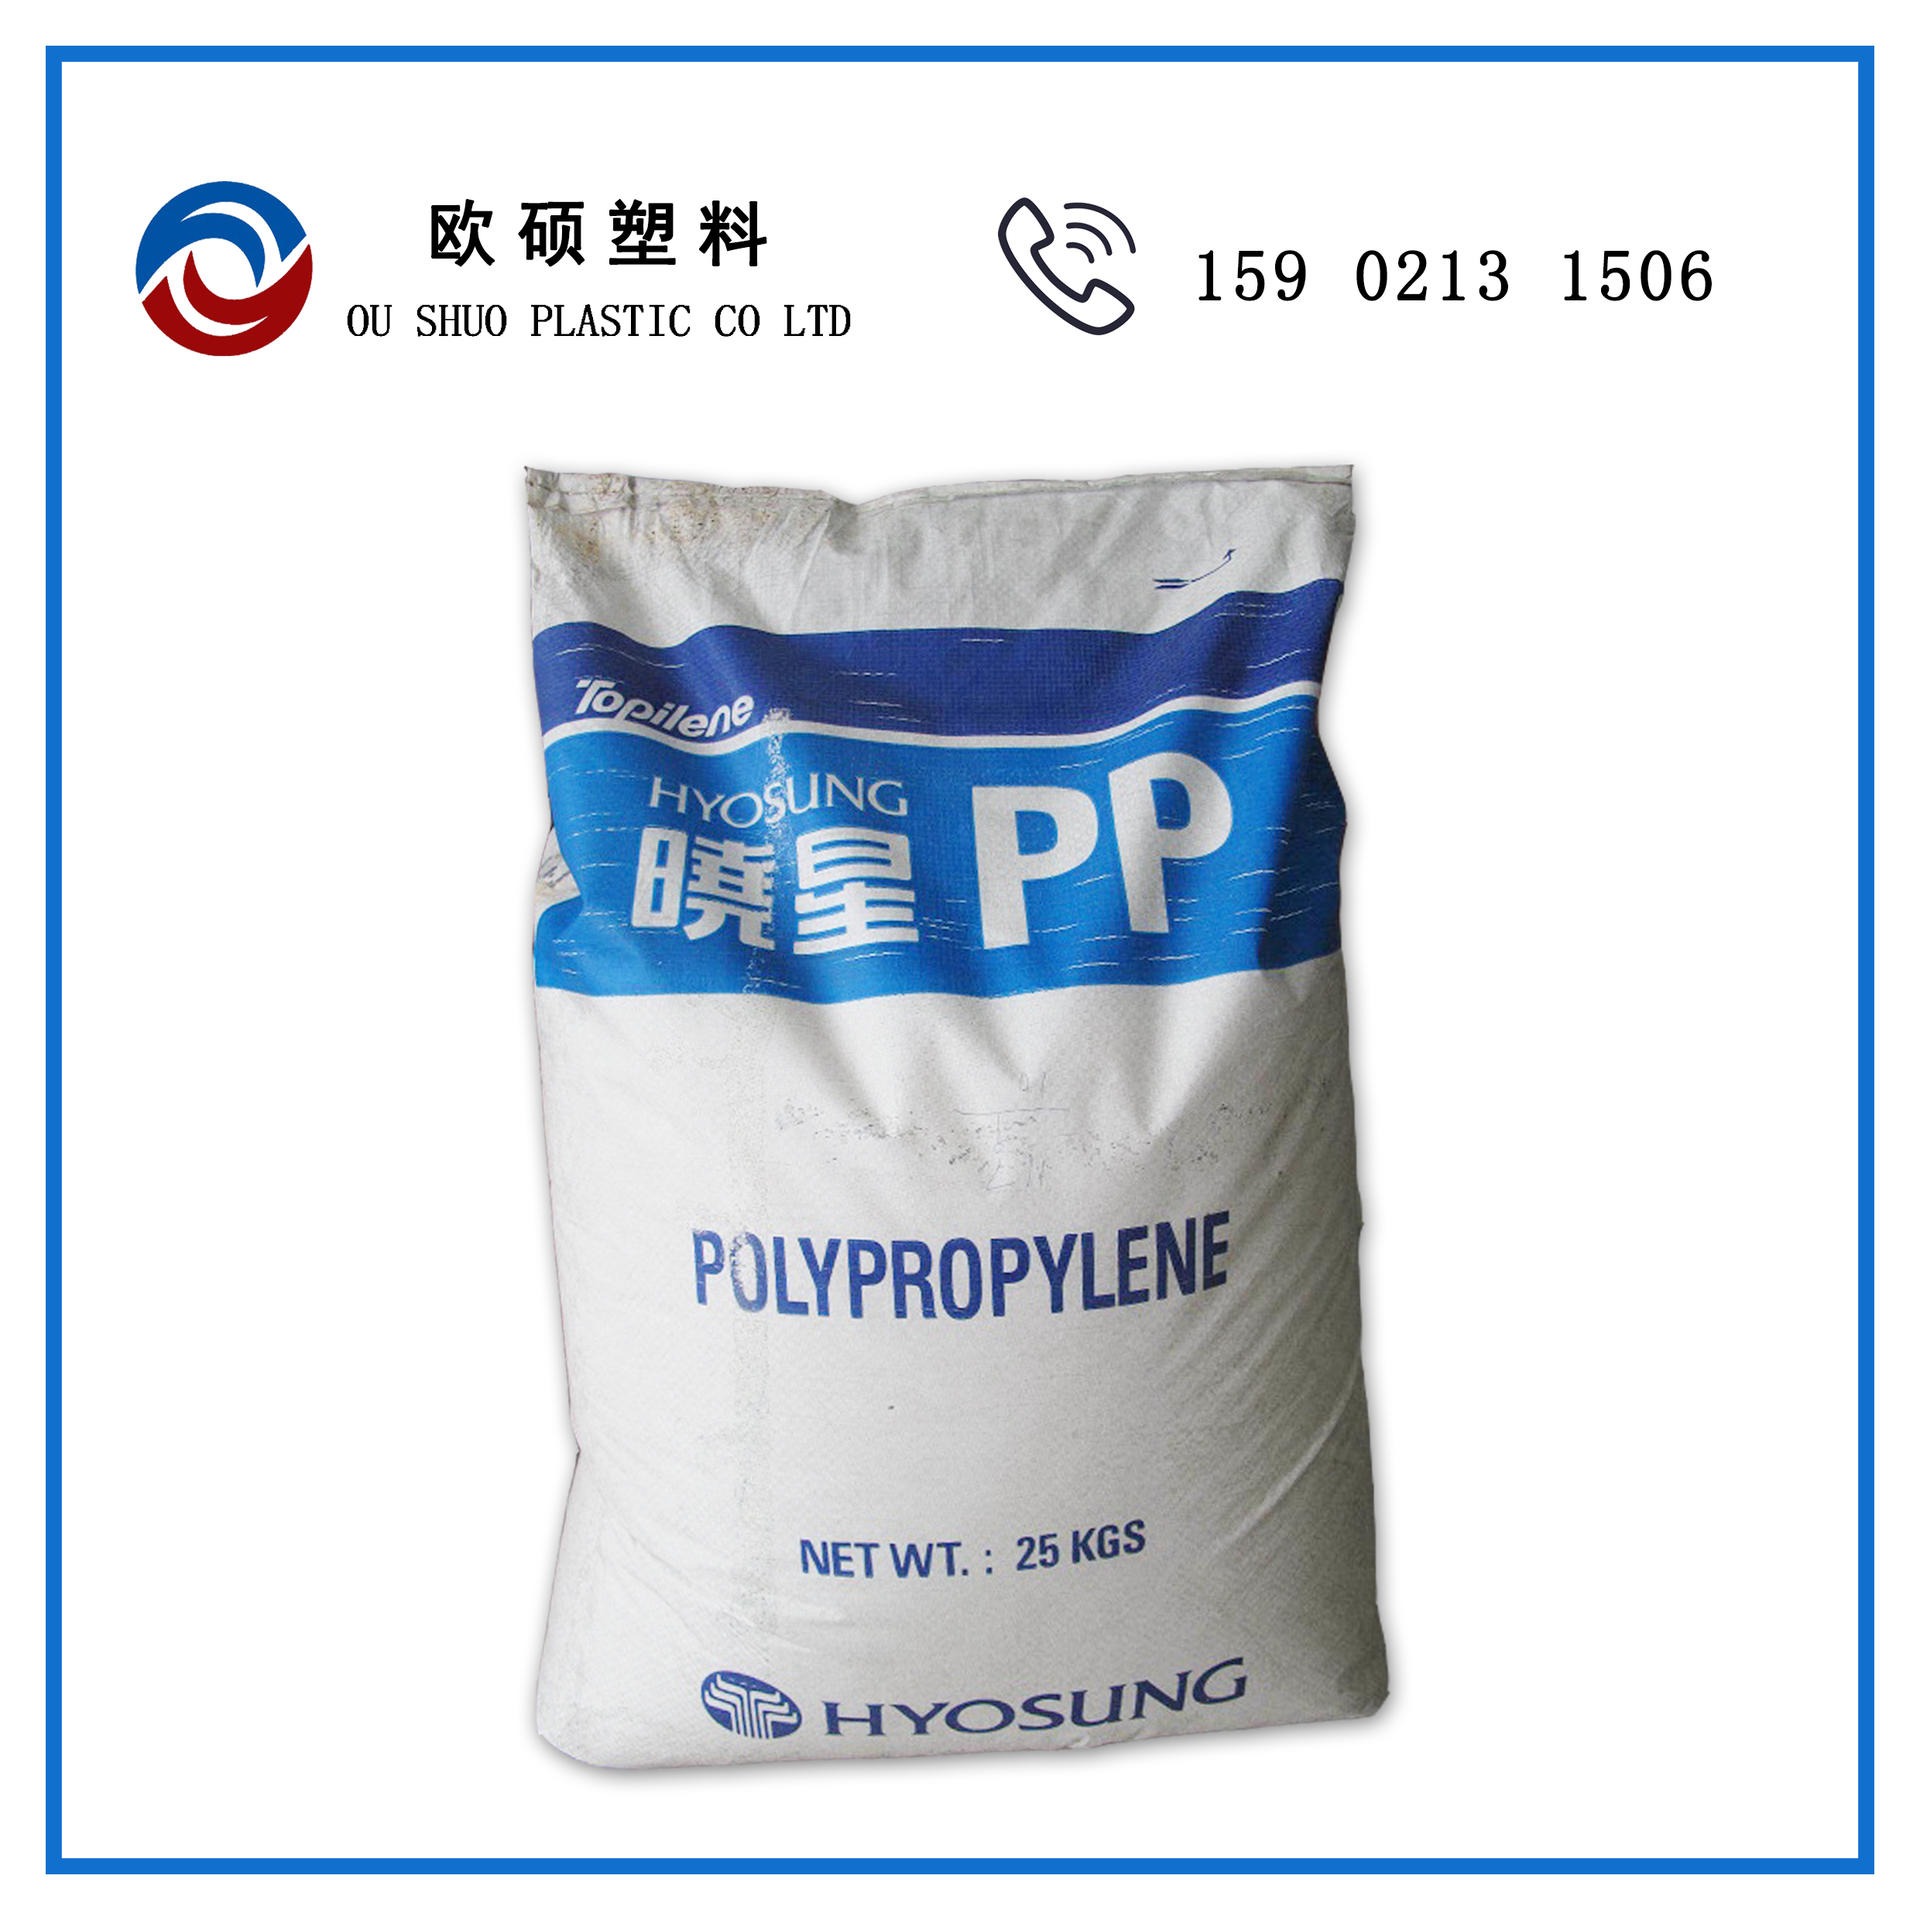 现货PP B240P 韩国晓星 管材级 板材级 聚丙烯原料